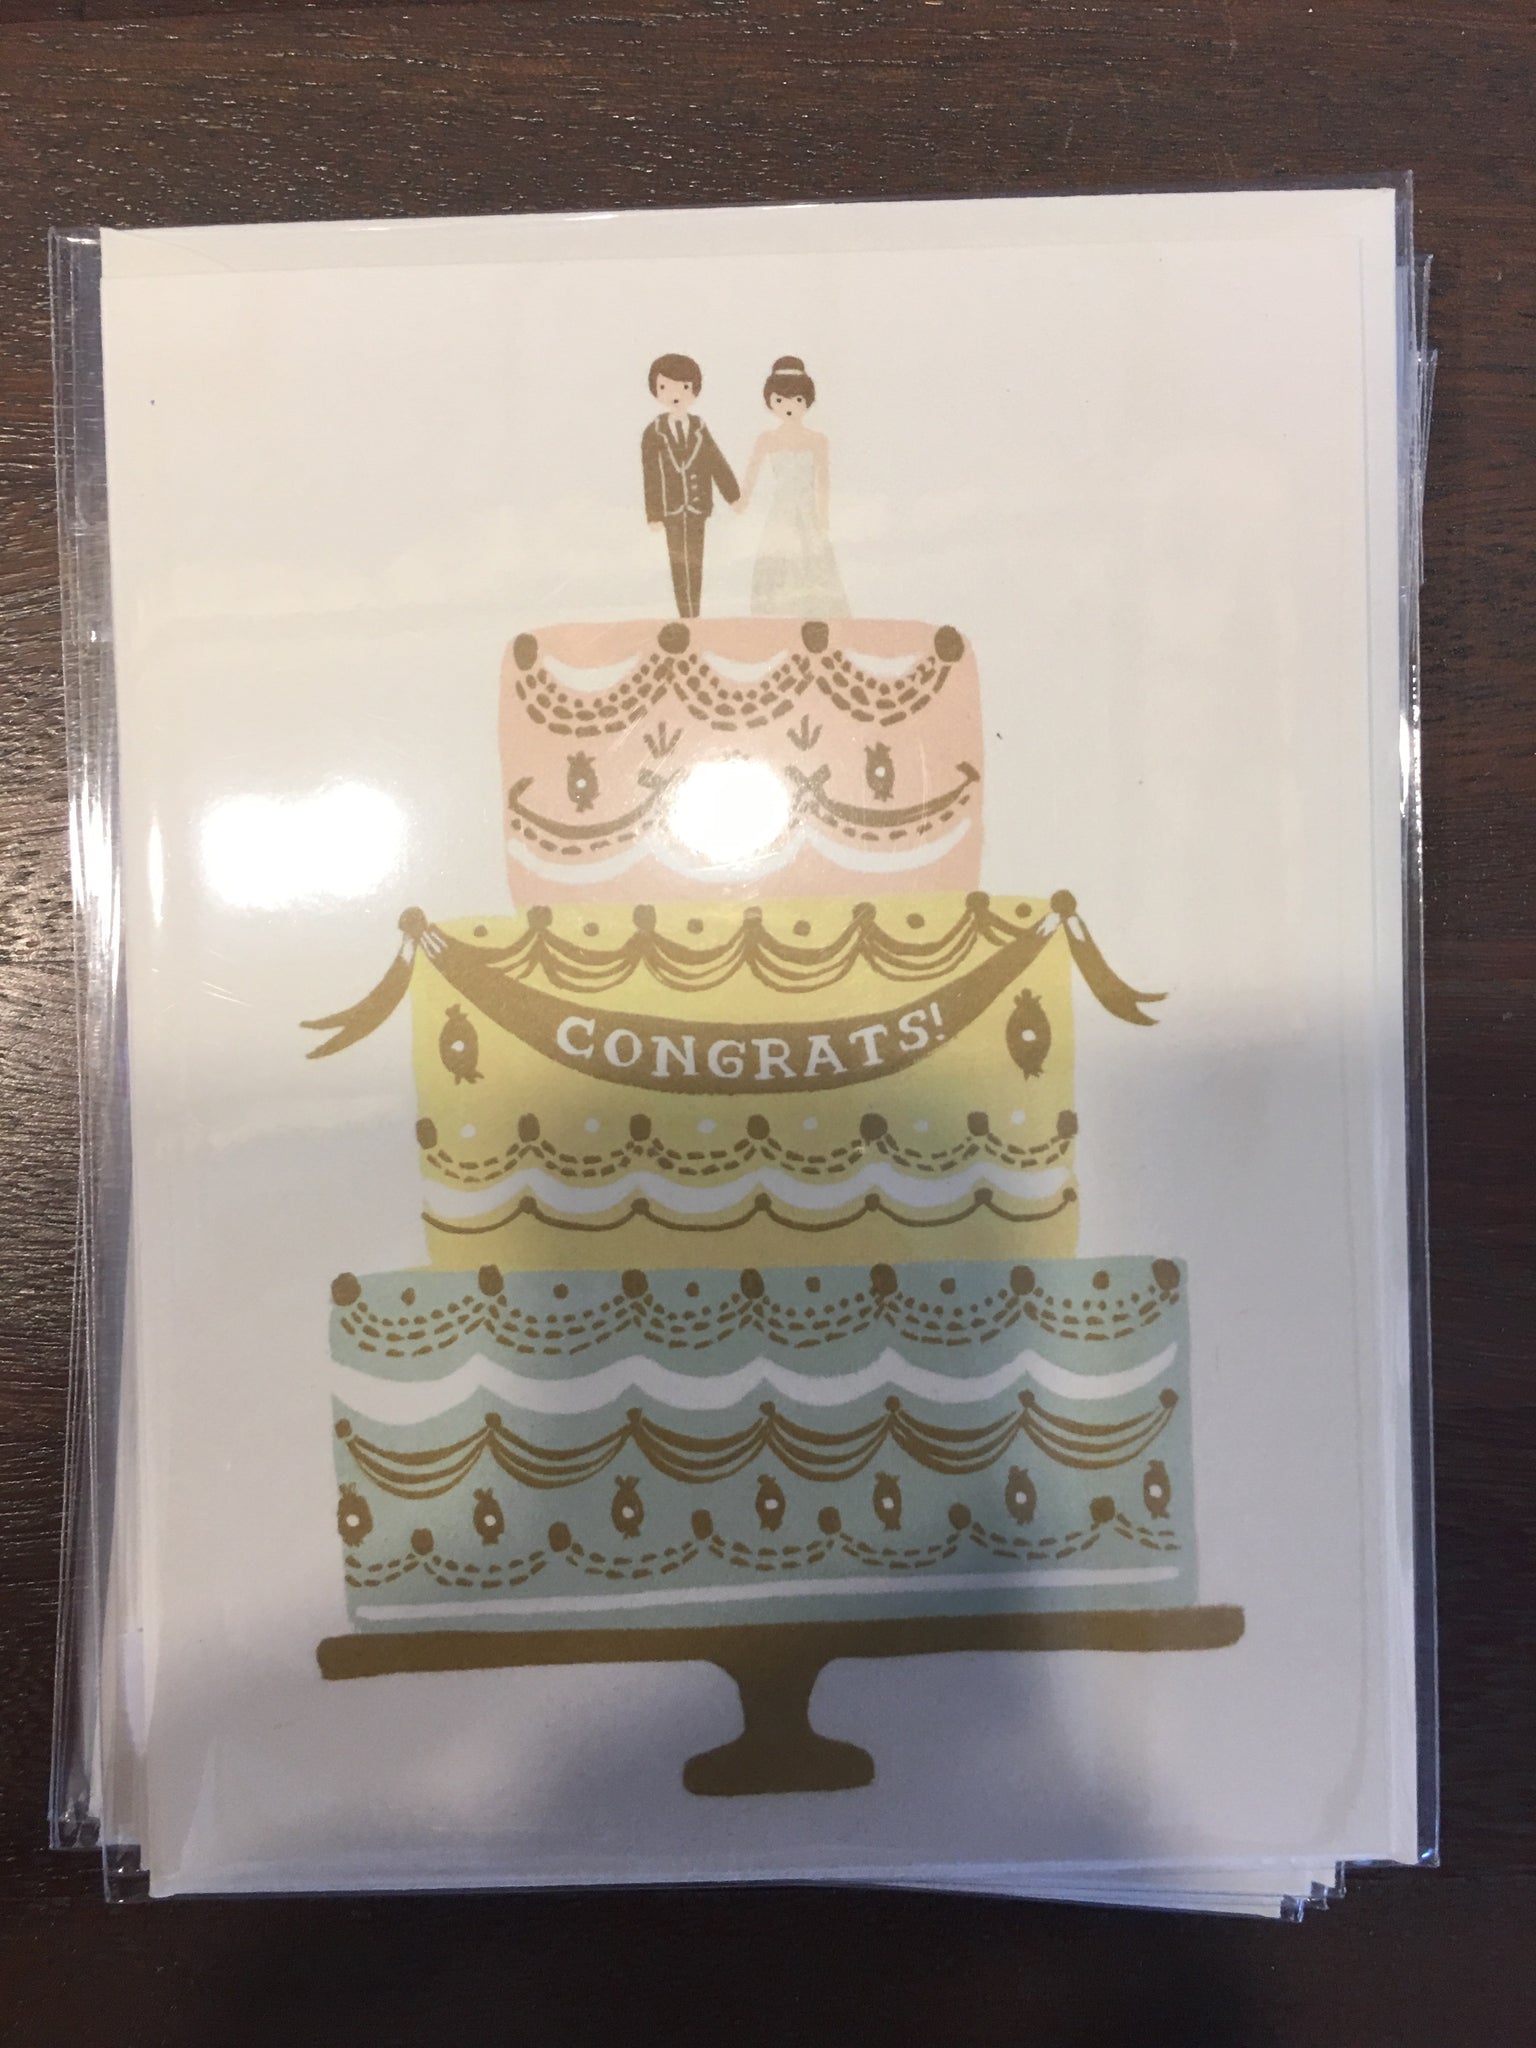 Congrats wedding cake card- rifle